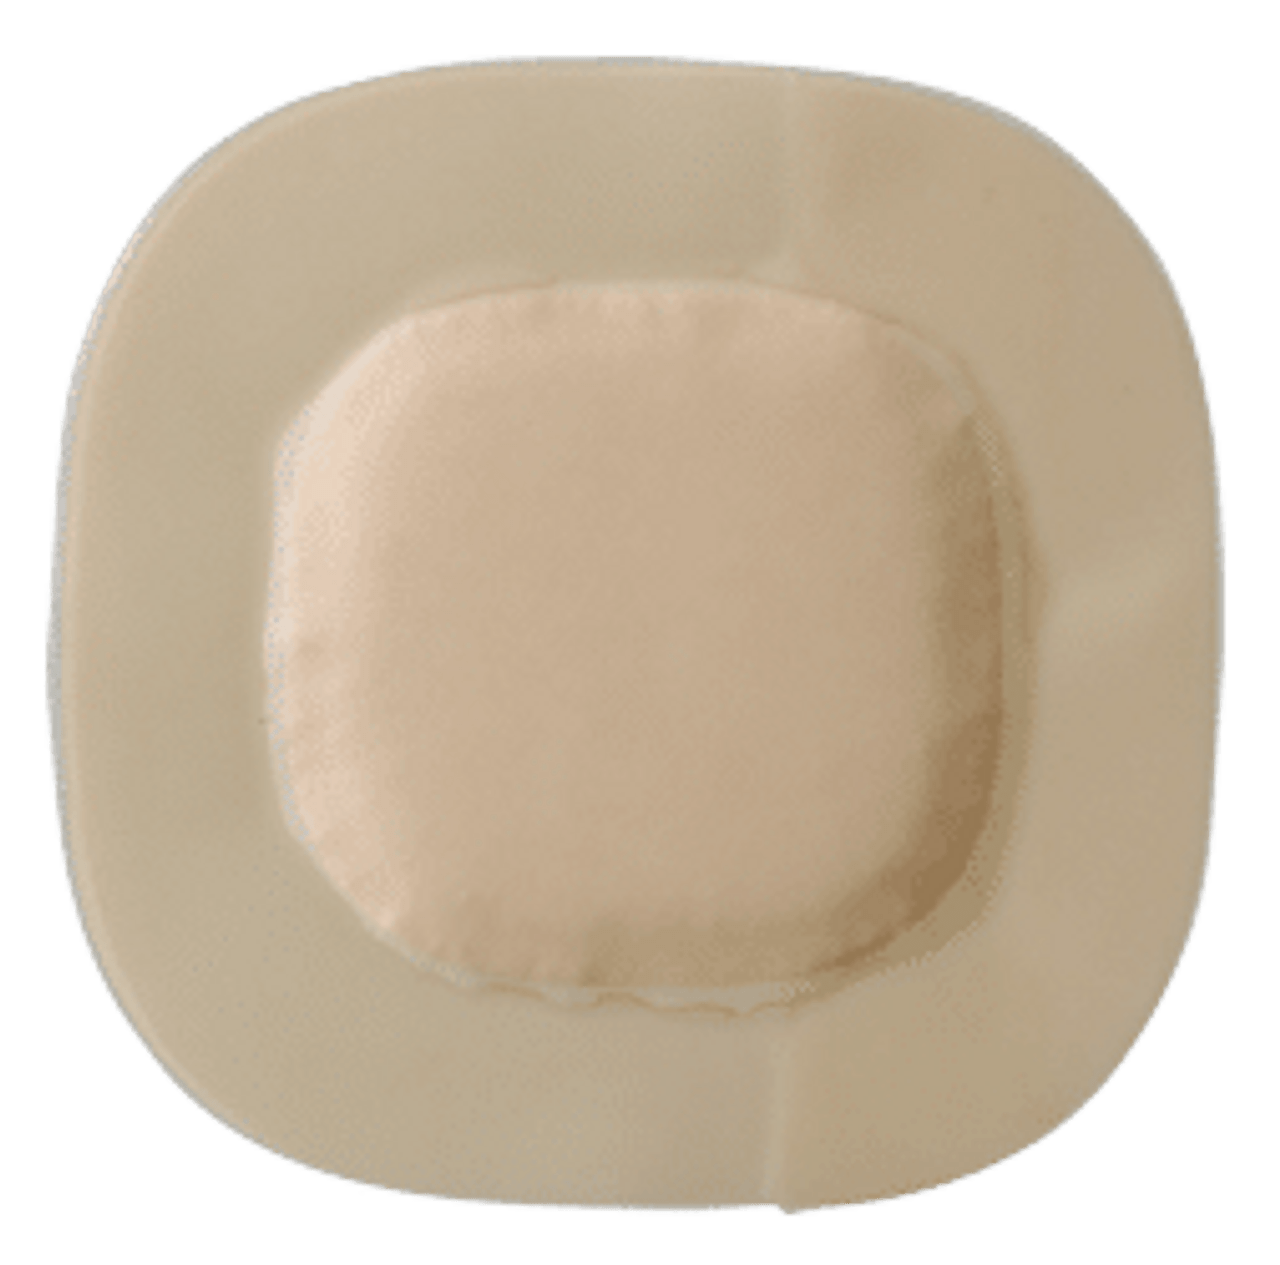 Coloplast 4610 Biatain® Super Adhesive